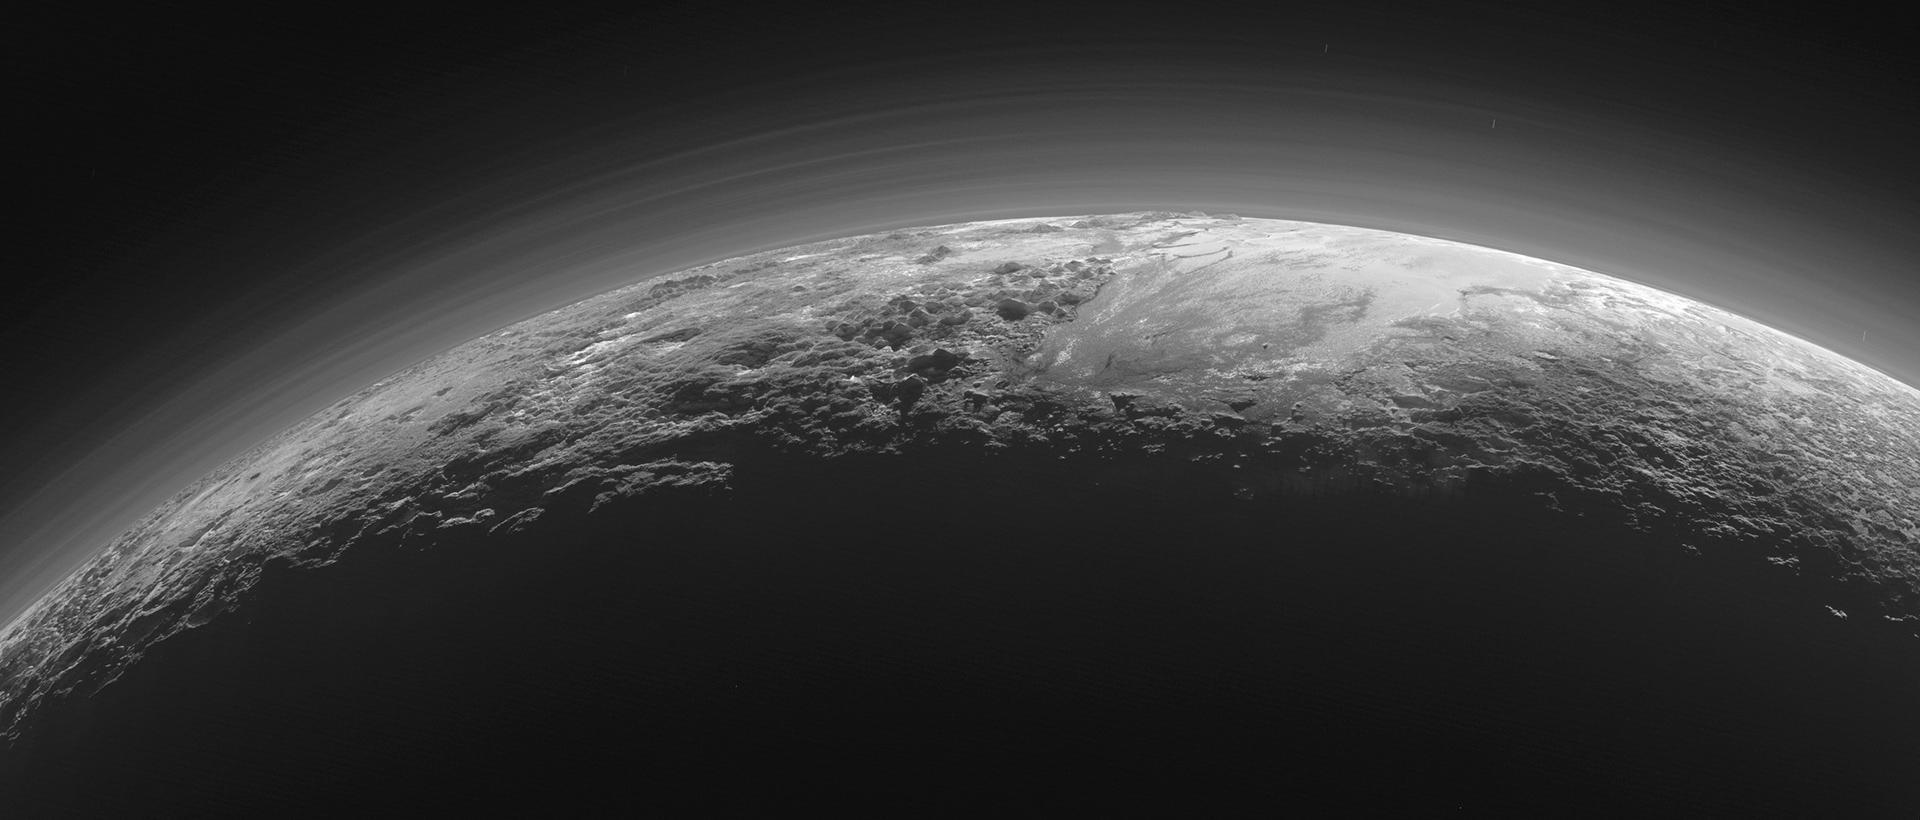 Pluto's atmosphere.